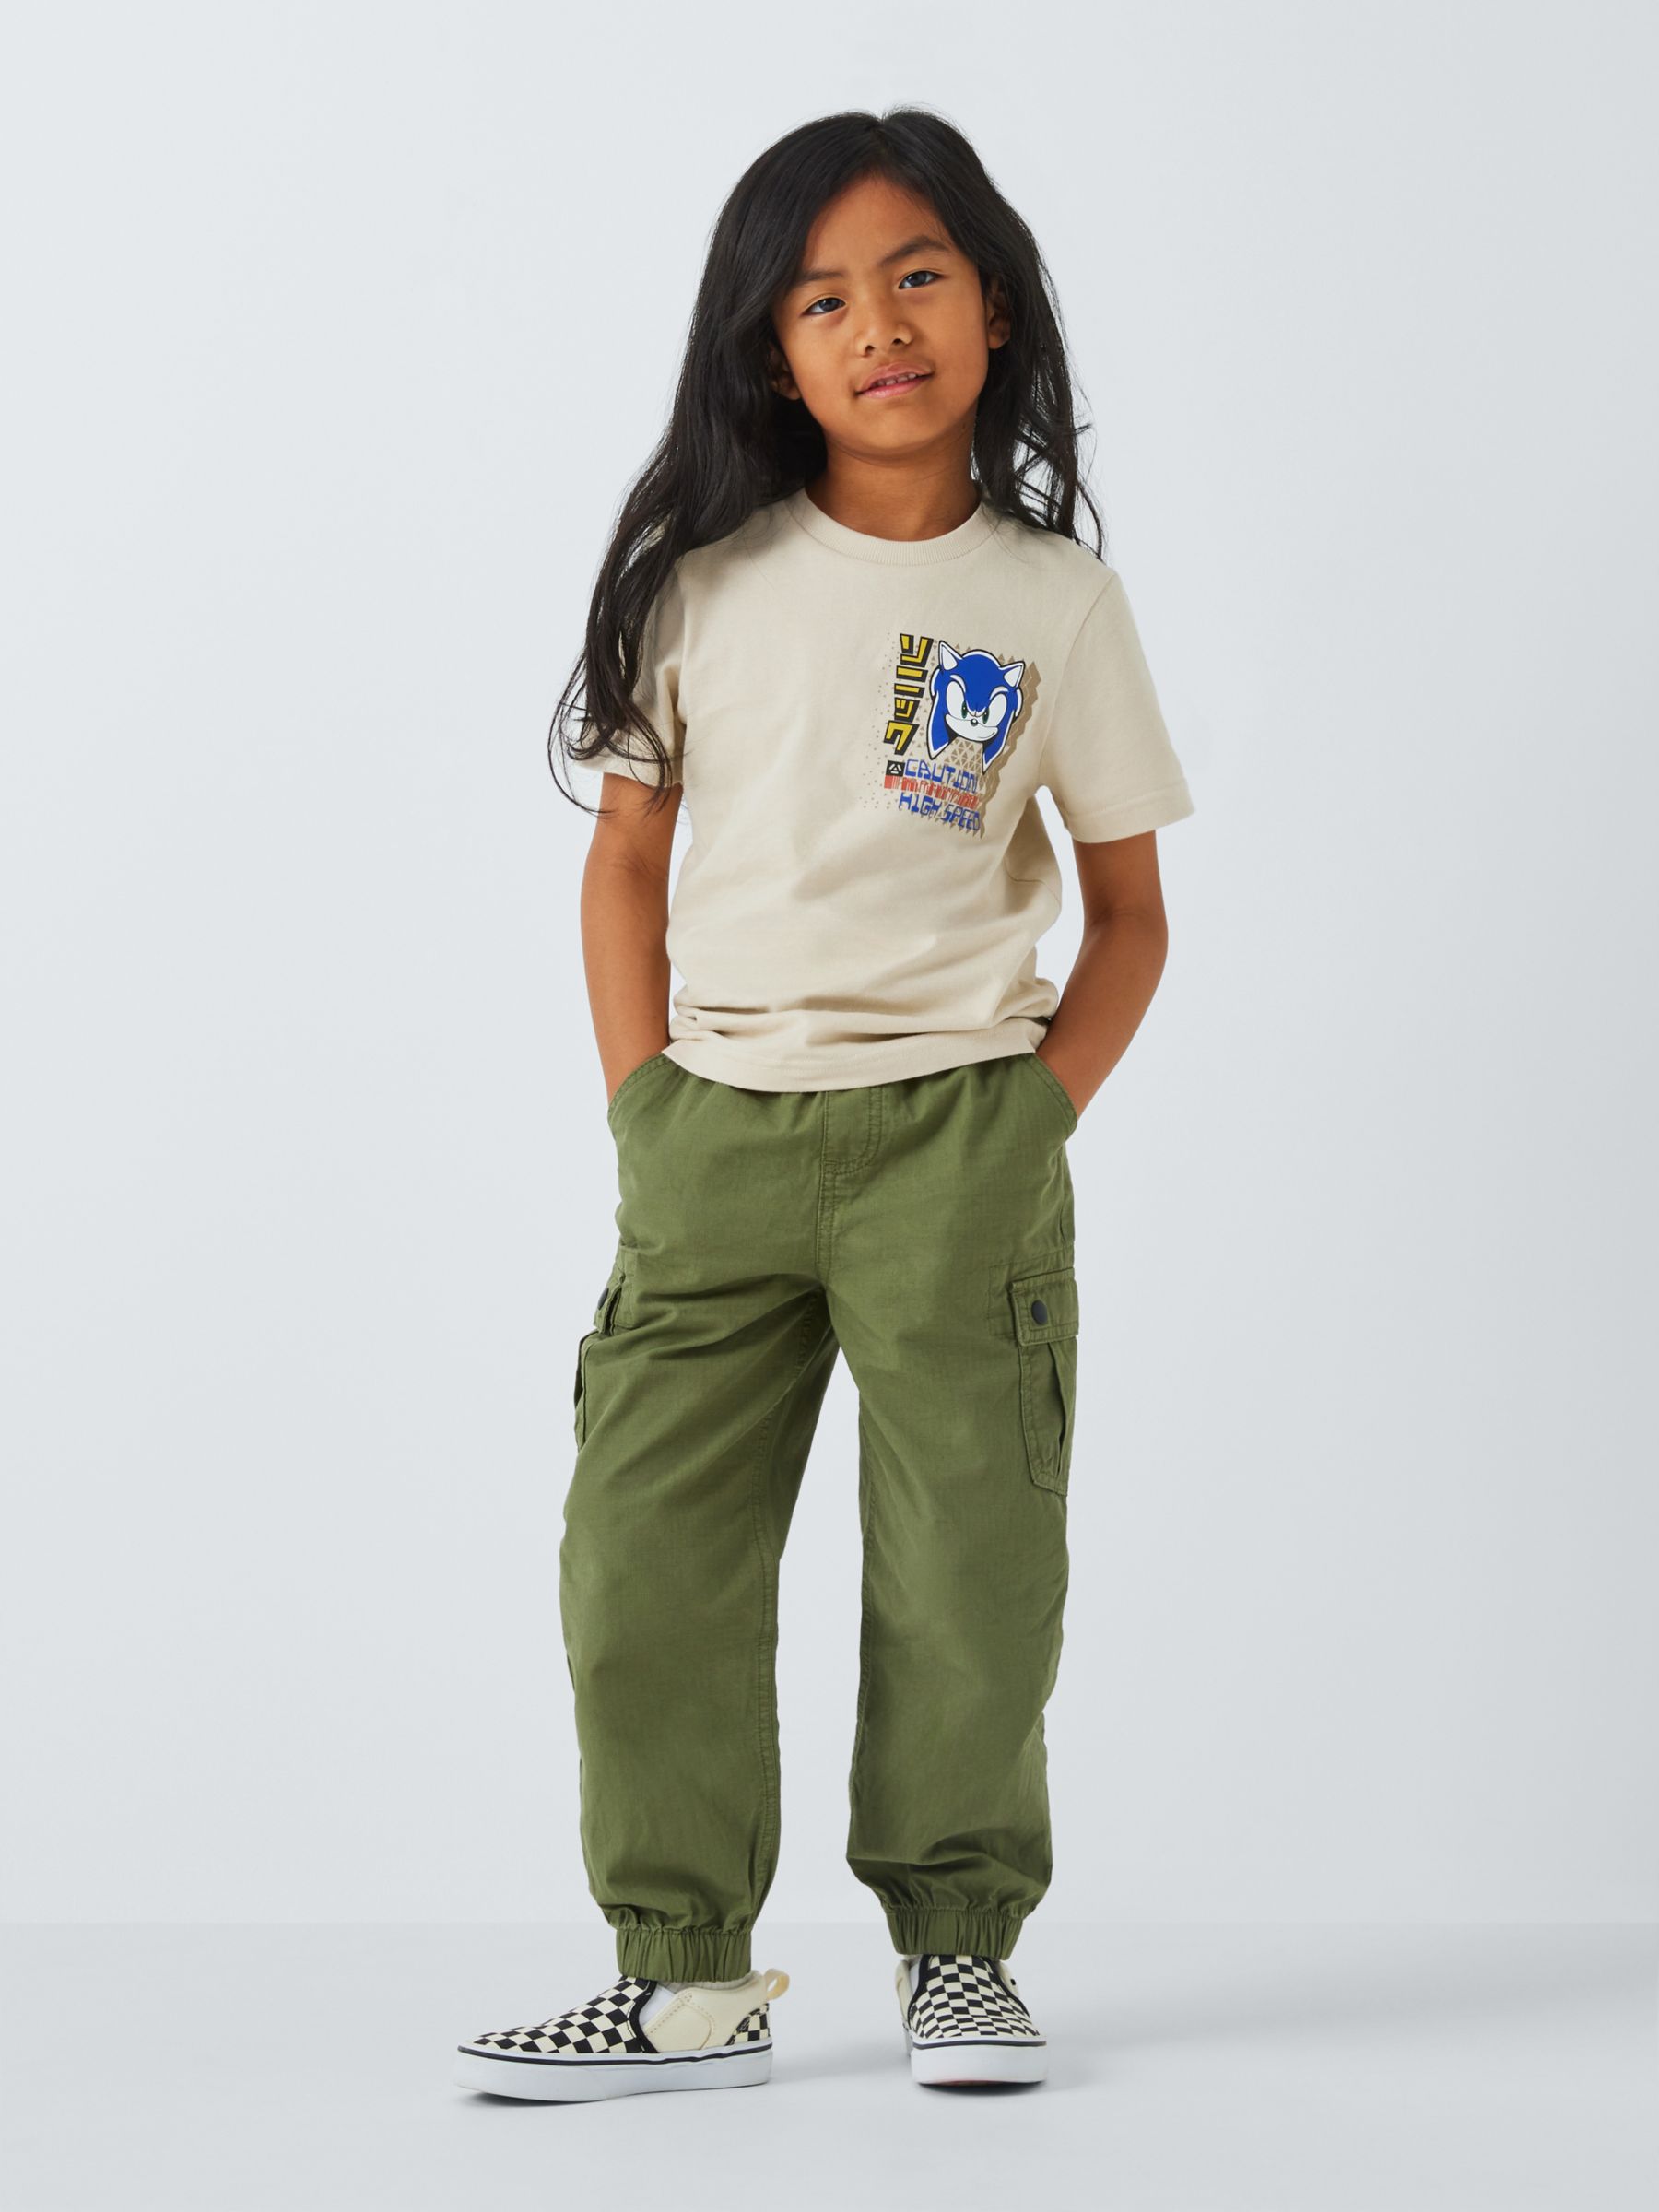 Brand Threads Kids' Sonic Graphic T-Shirt, Tan, 4-5 years